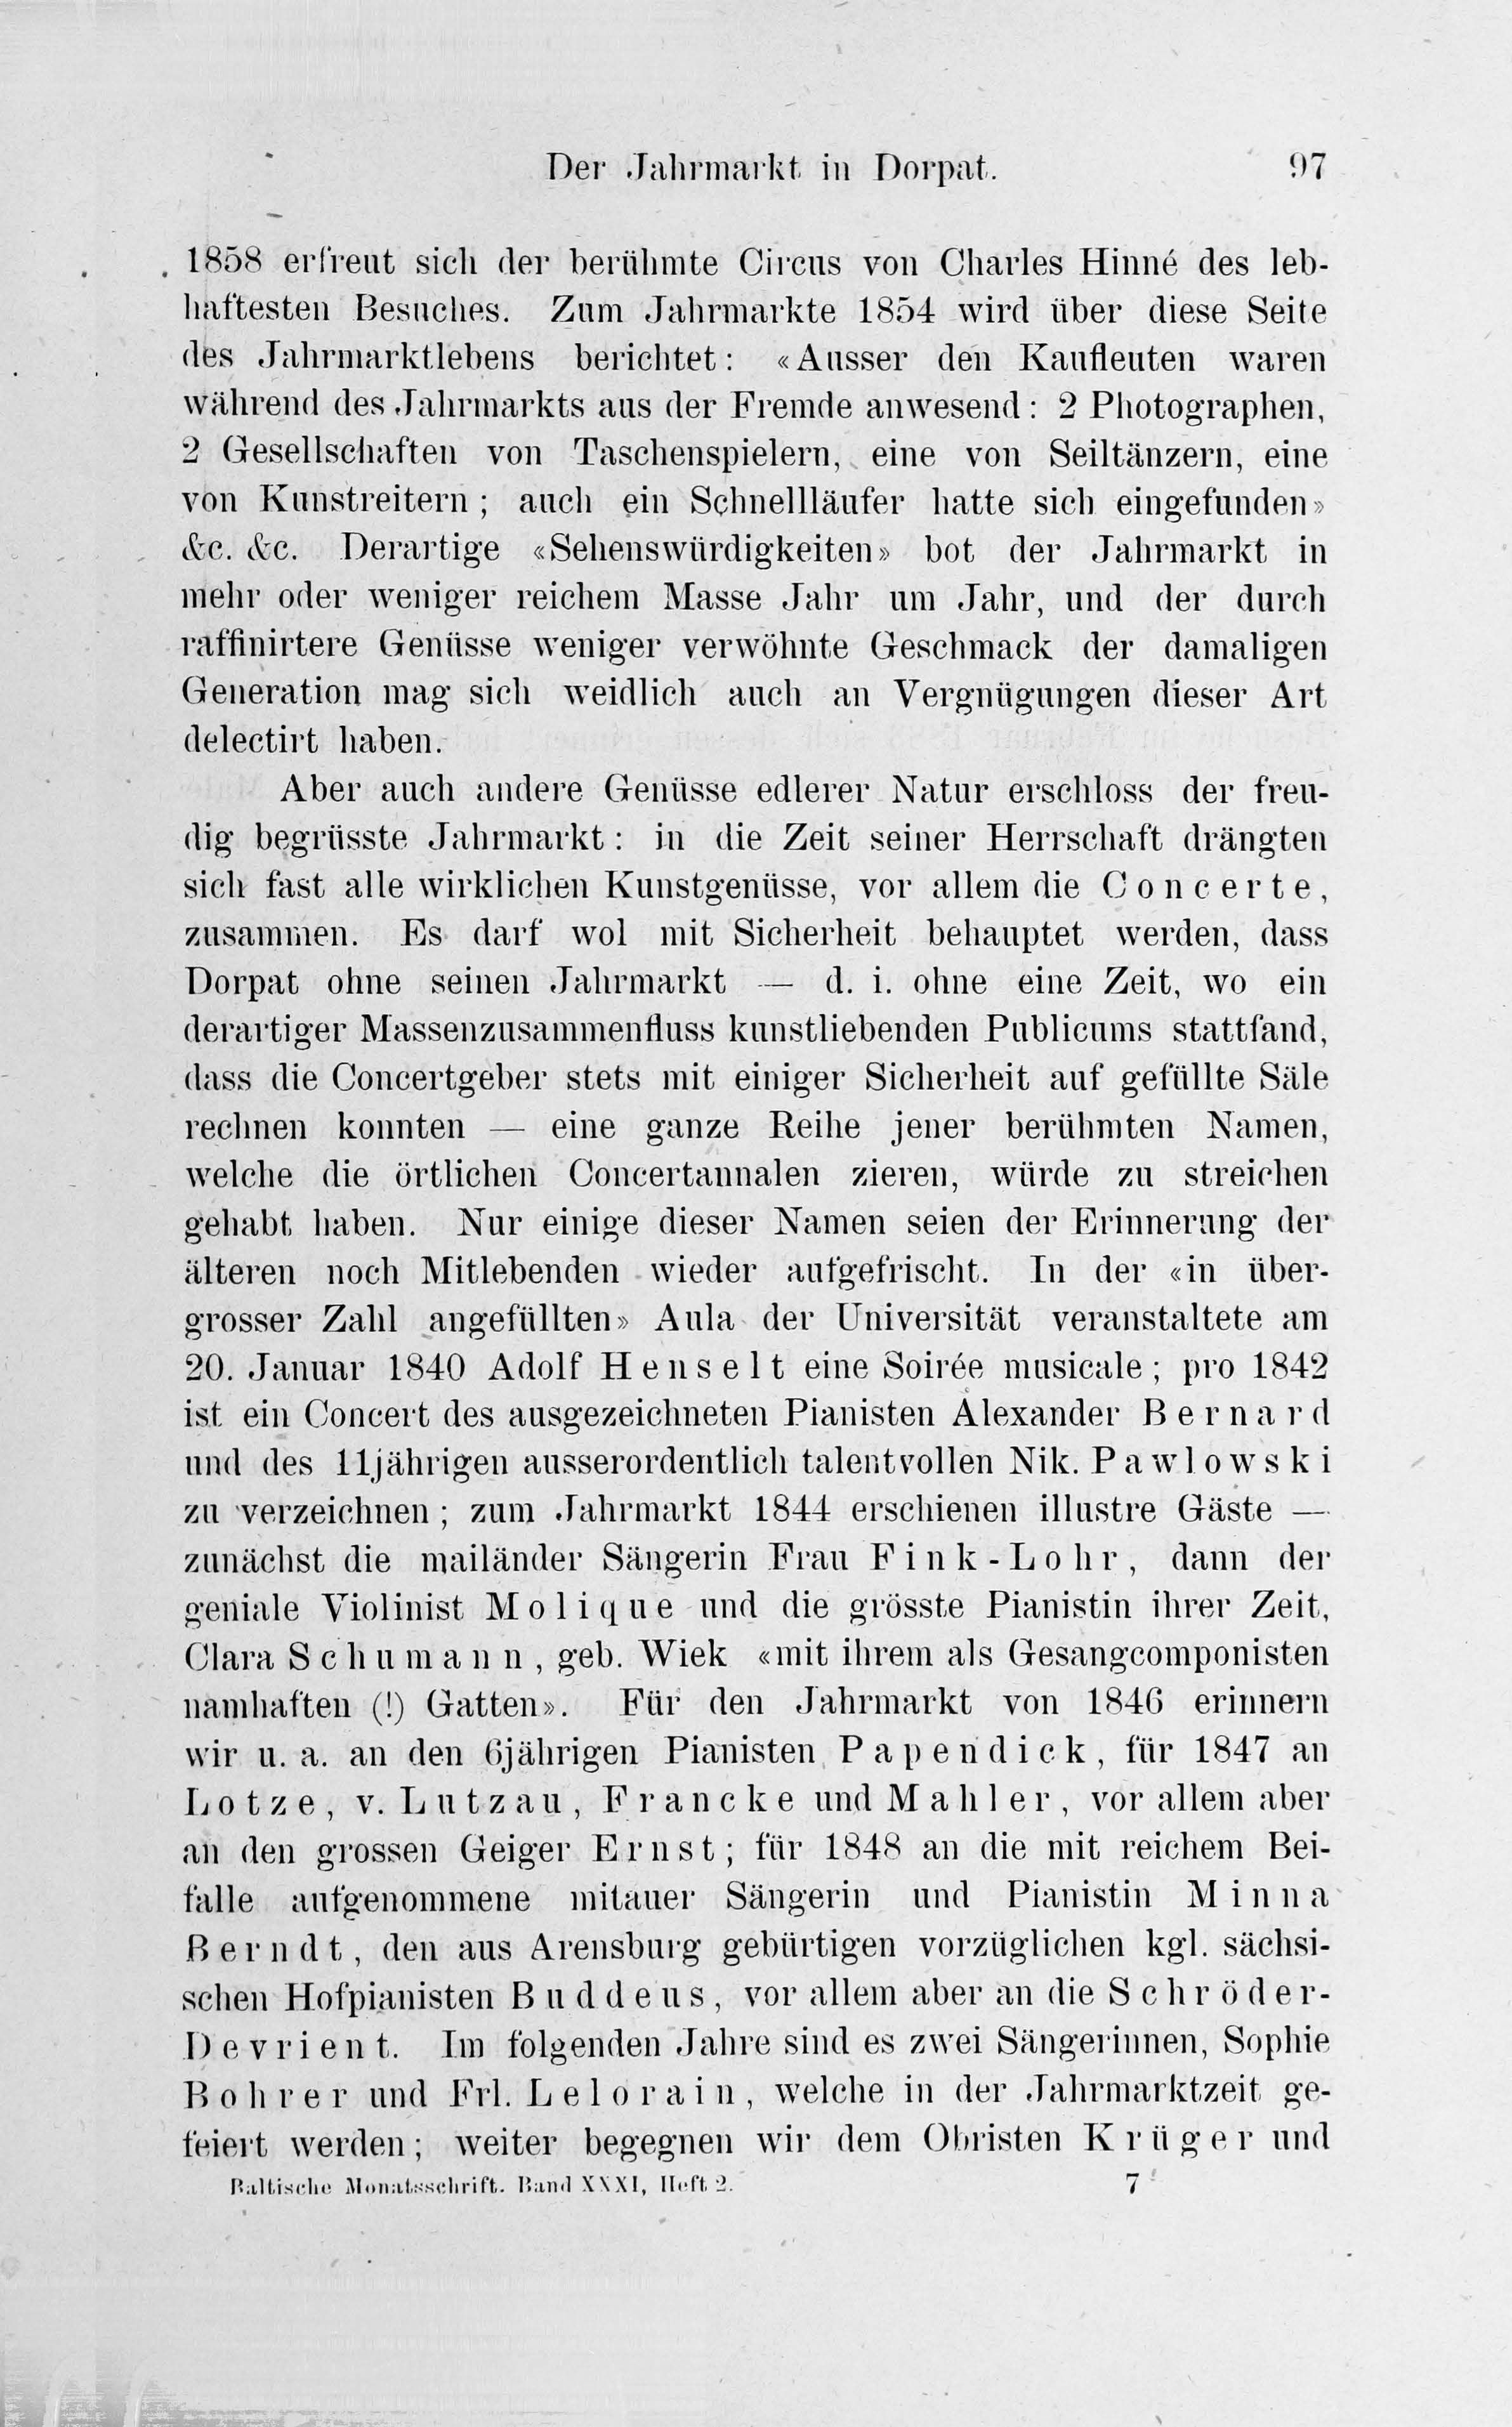 Der Jahrmarkt in Dorpat (1884) | 37. Põhitekst